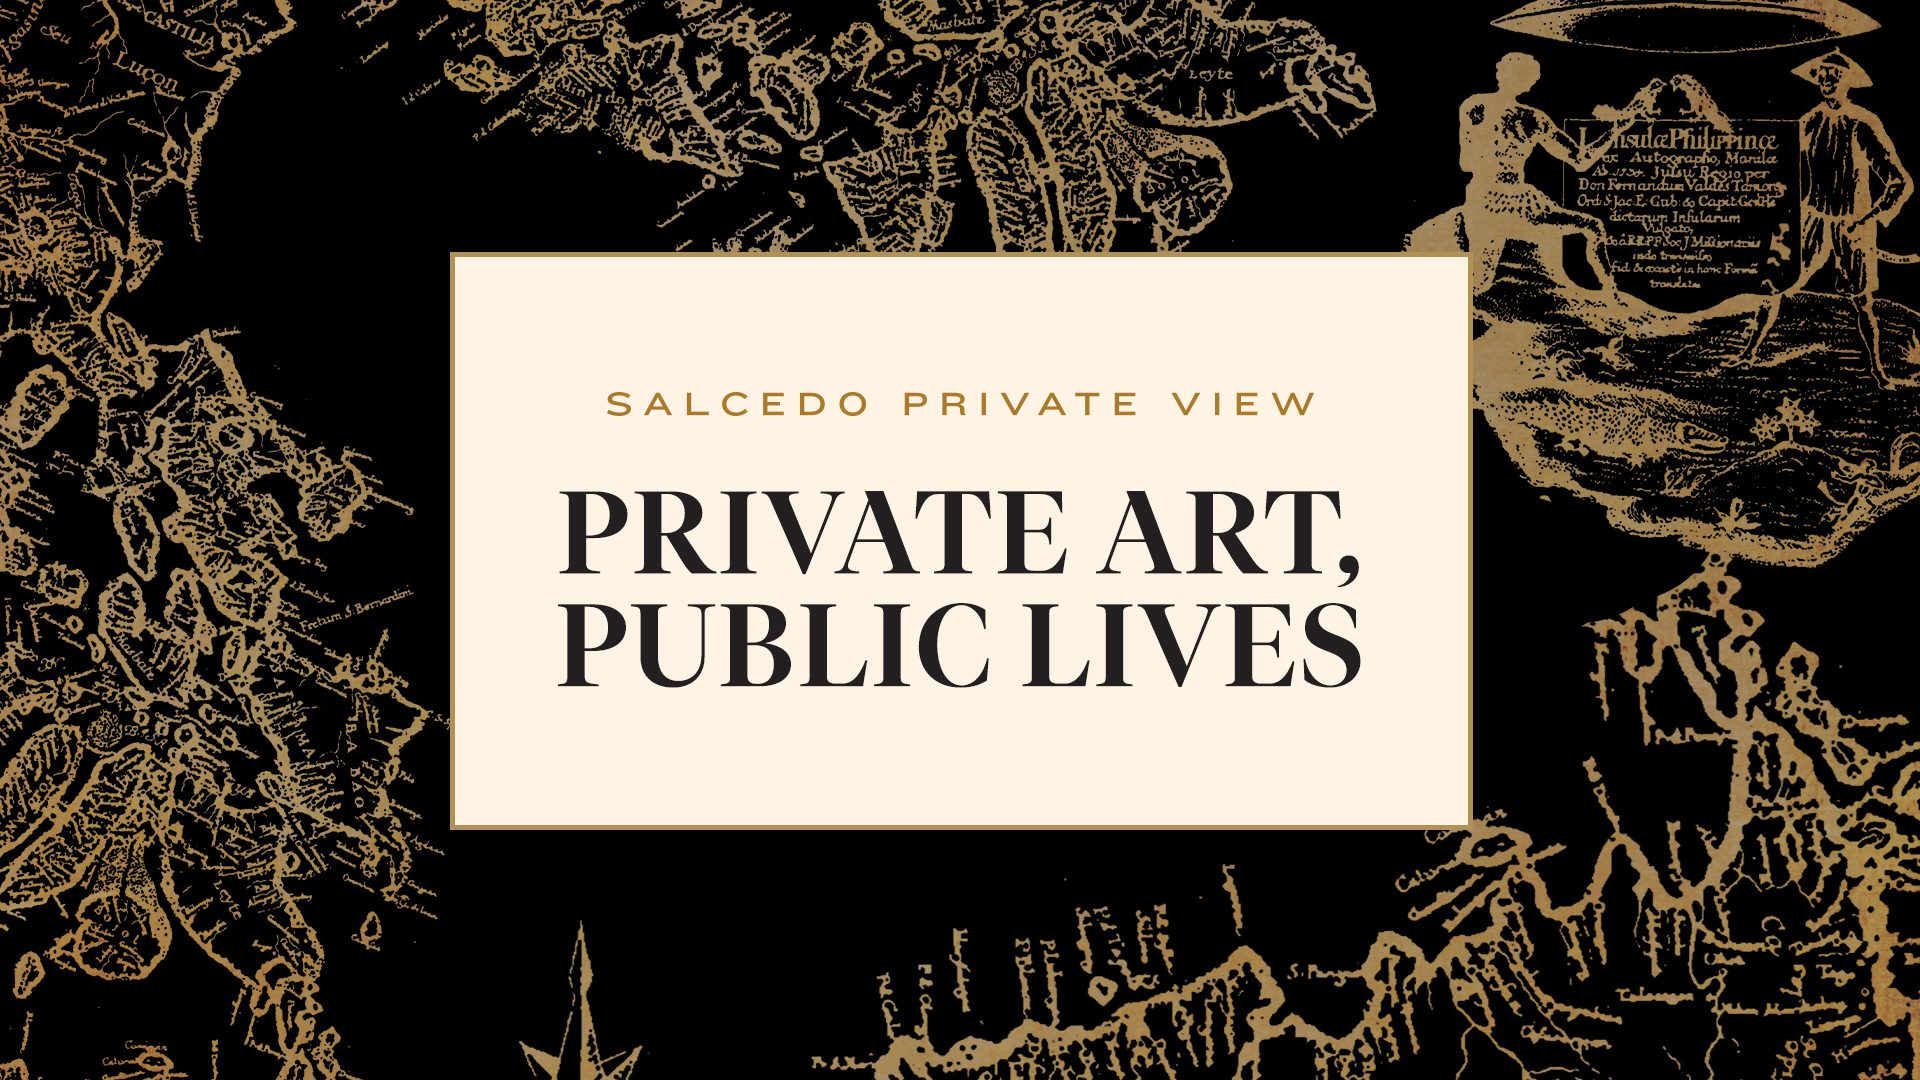 Private Art, Public Lives